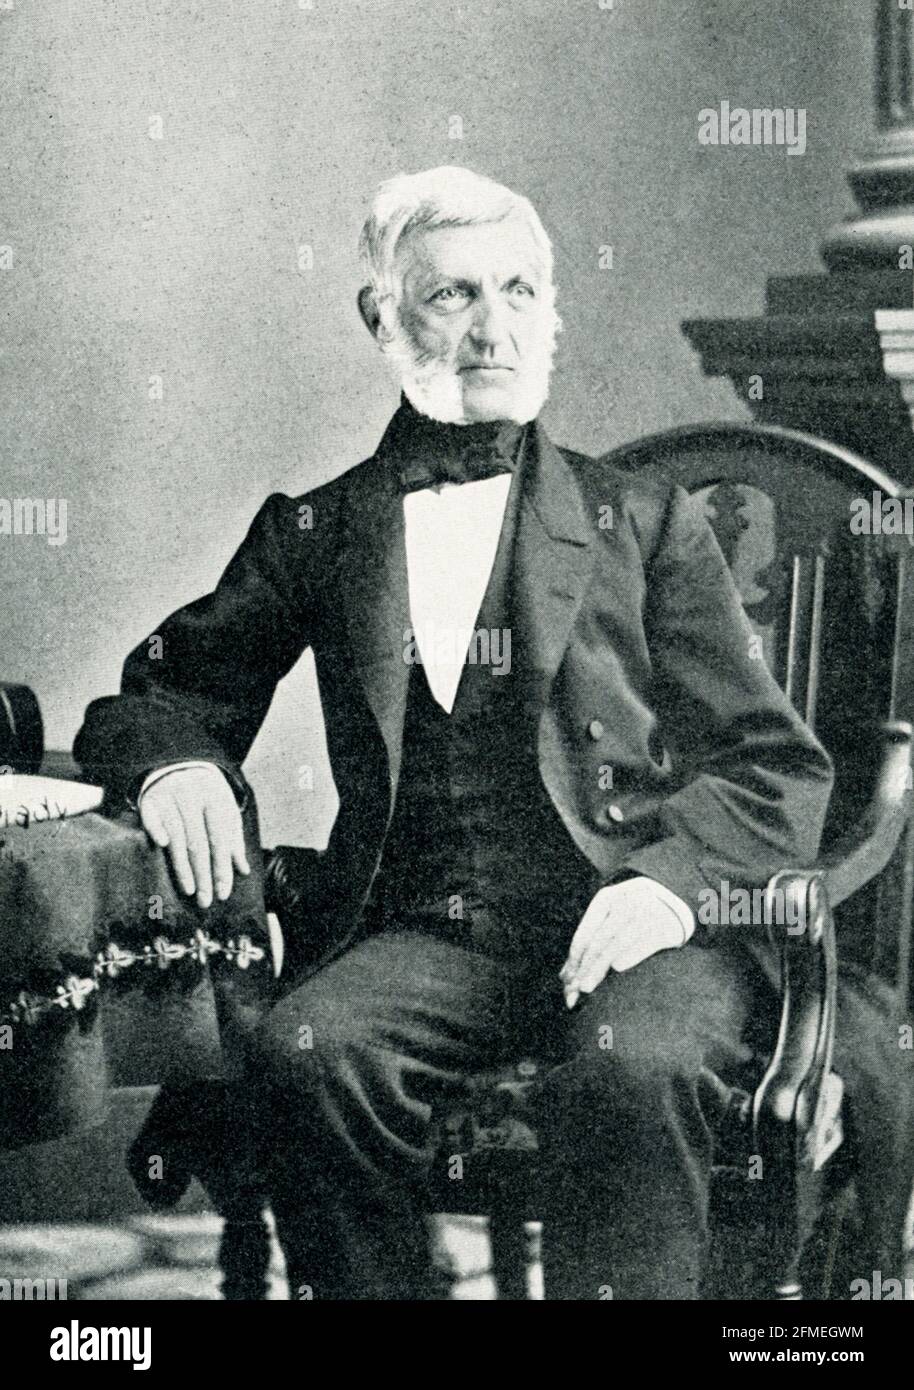 George Bancroft - Gründer der Naval Academy. Bereits 1845 als Historiker bekannt, signalisierte Bancroft seinen Eintritt in das Kabinett von Präsident Polk als Sekretär der Marine, indem er die Naval School, später die Academy in Annapolis, gründete. Stockfoto